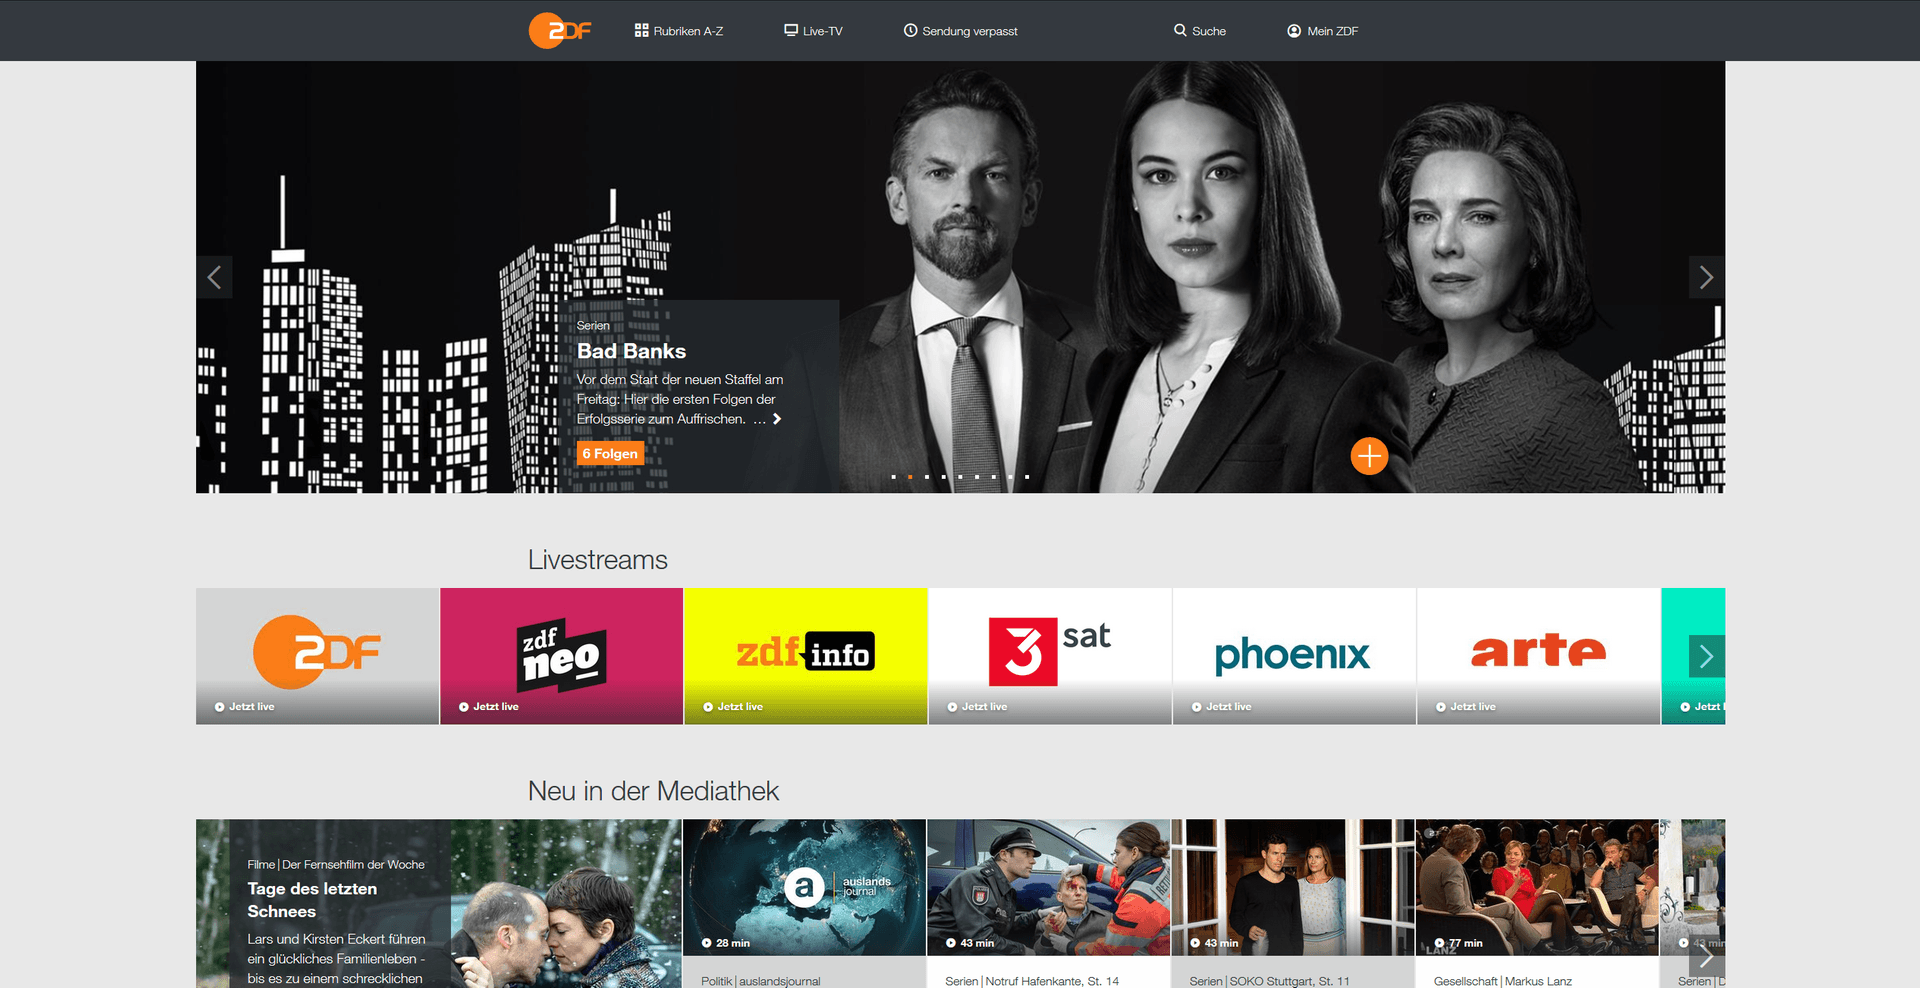 Screenshot ZDF.de: Die Mediathek hat Eigenproduktionen wie "Bad Banks" im Angebot.